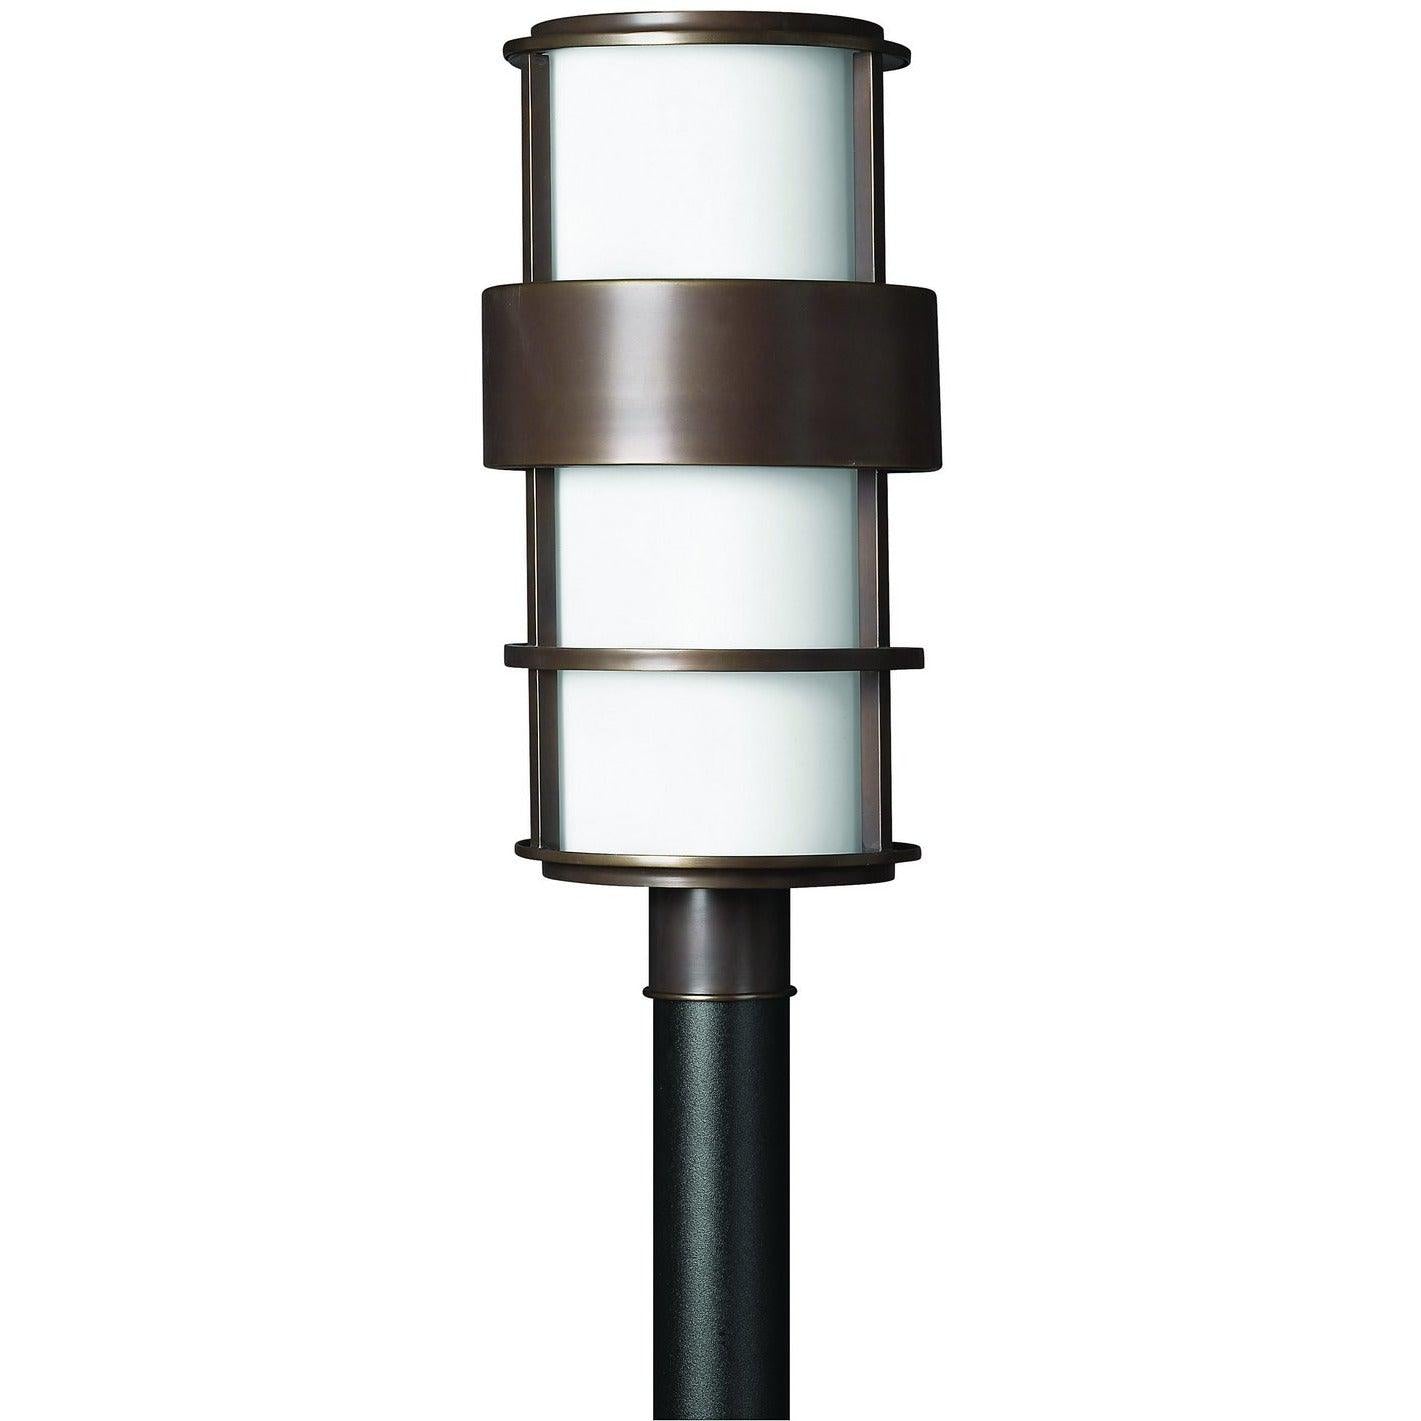 Hinkley Lighting - Saturn 22-Inch Outdoor Post Mount - 1901MT | Montreal Lighting & Hardware